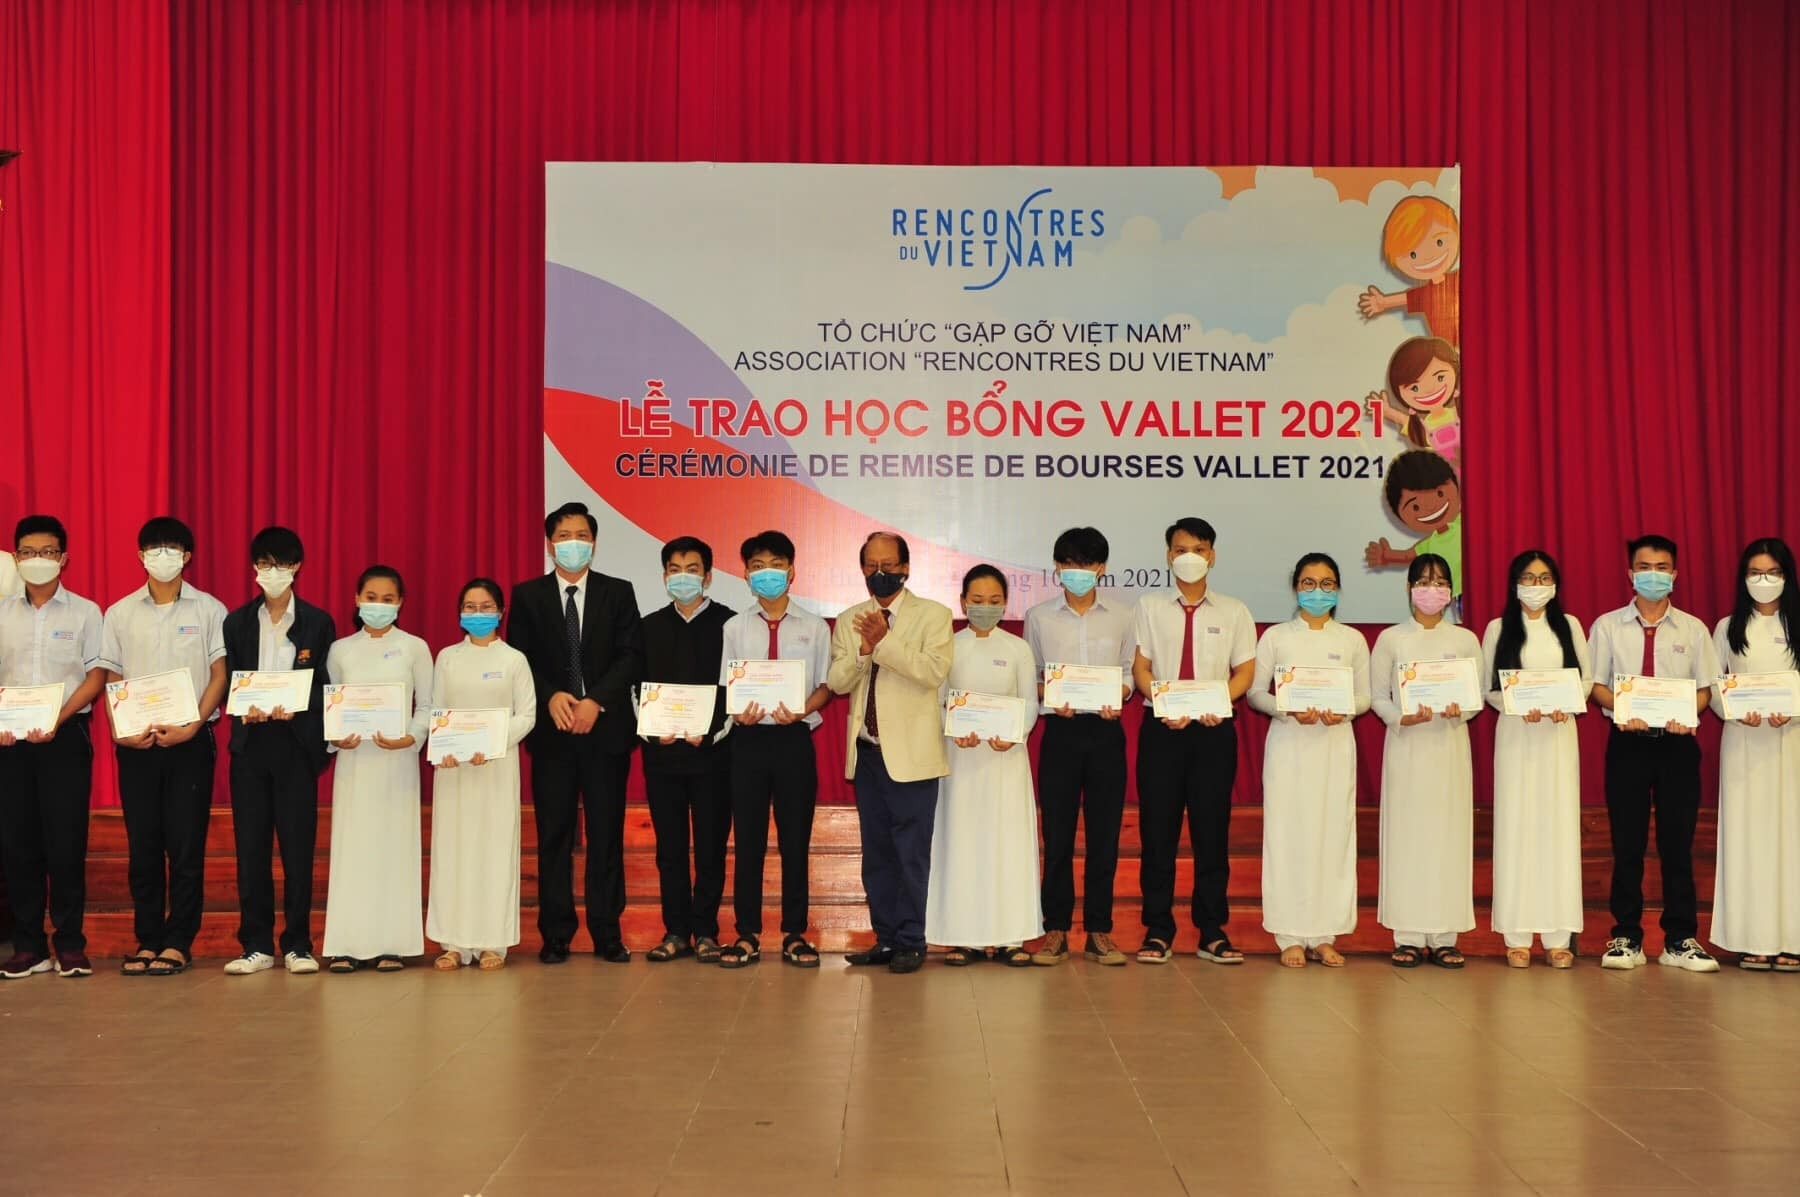 两千多名越南学生获得了越南聚会组织的Vallet 奖学金。